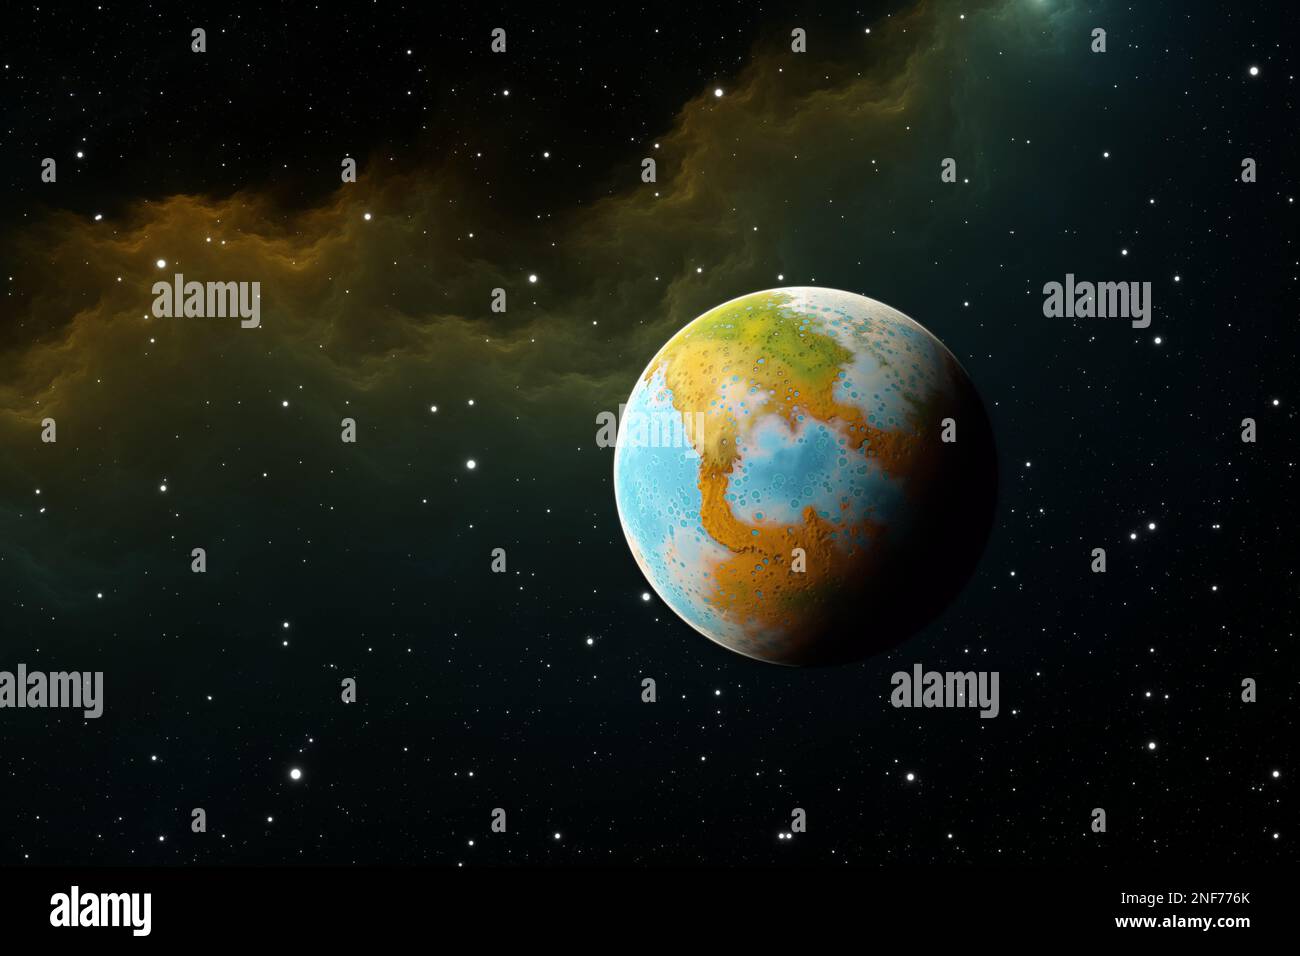 L'exoplanète rocheuse prometteuse avec de l'eau liquide à sa surface. 3D illustration Banque D'Images